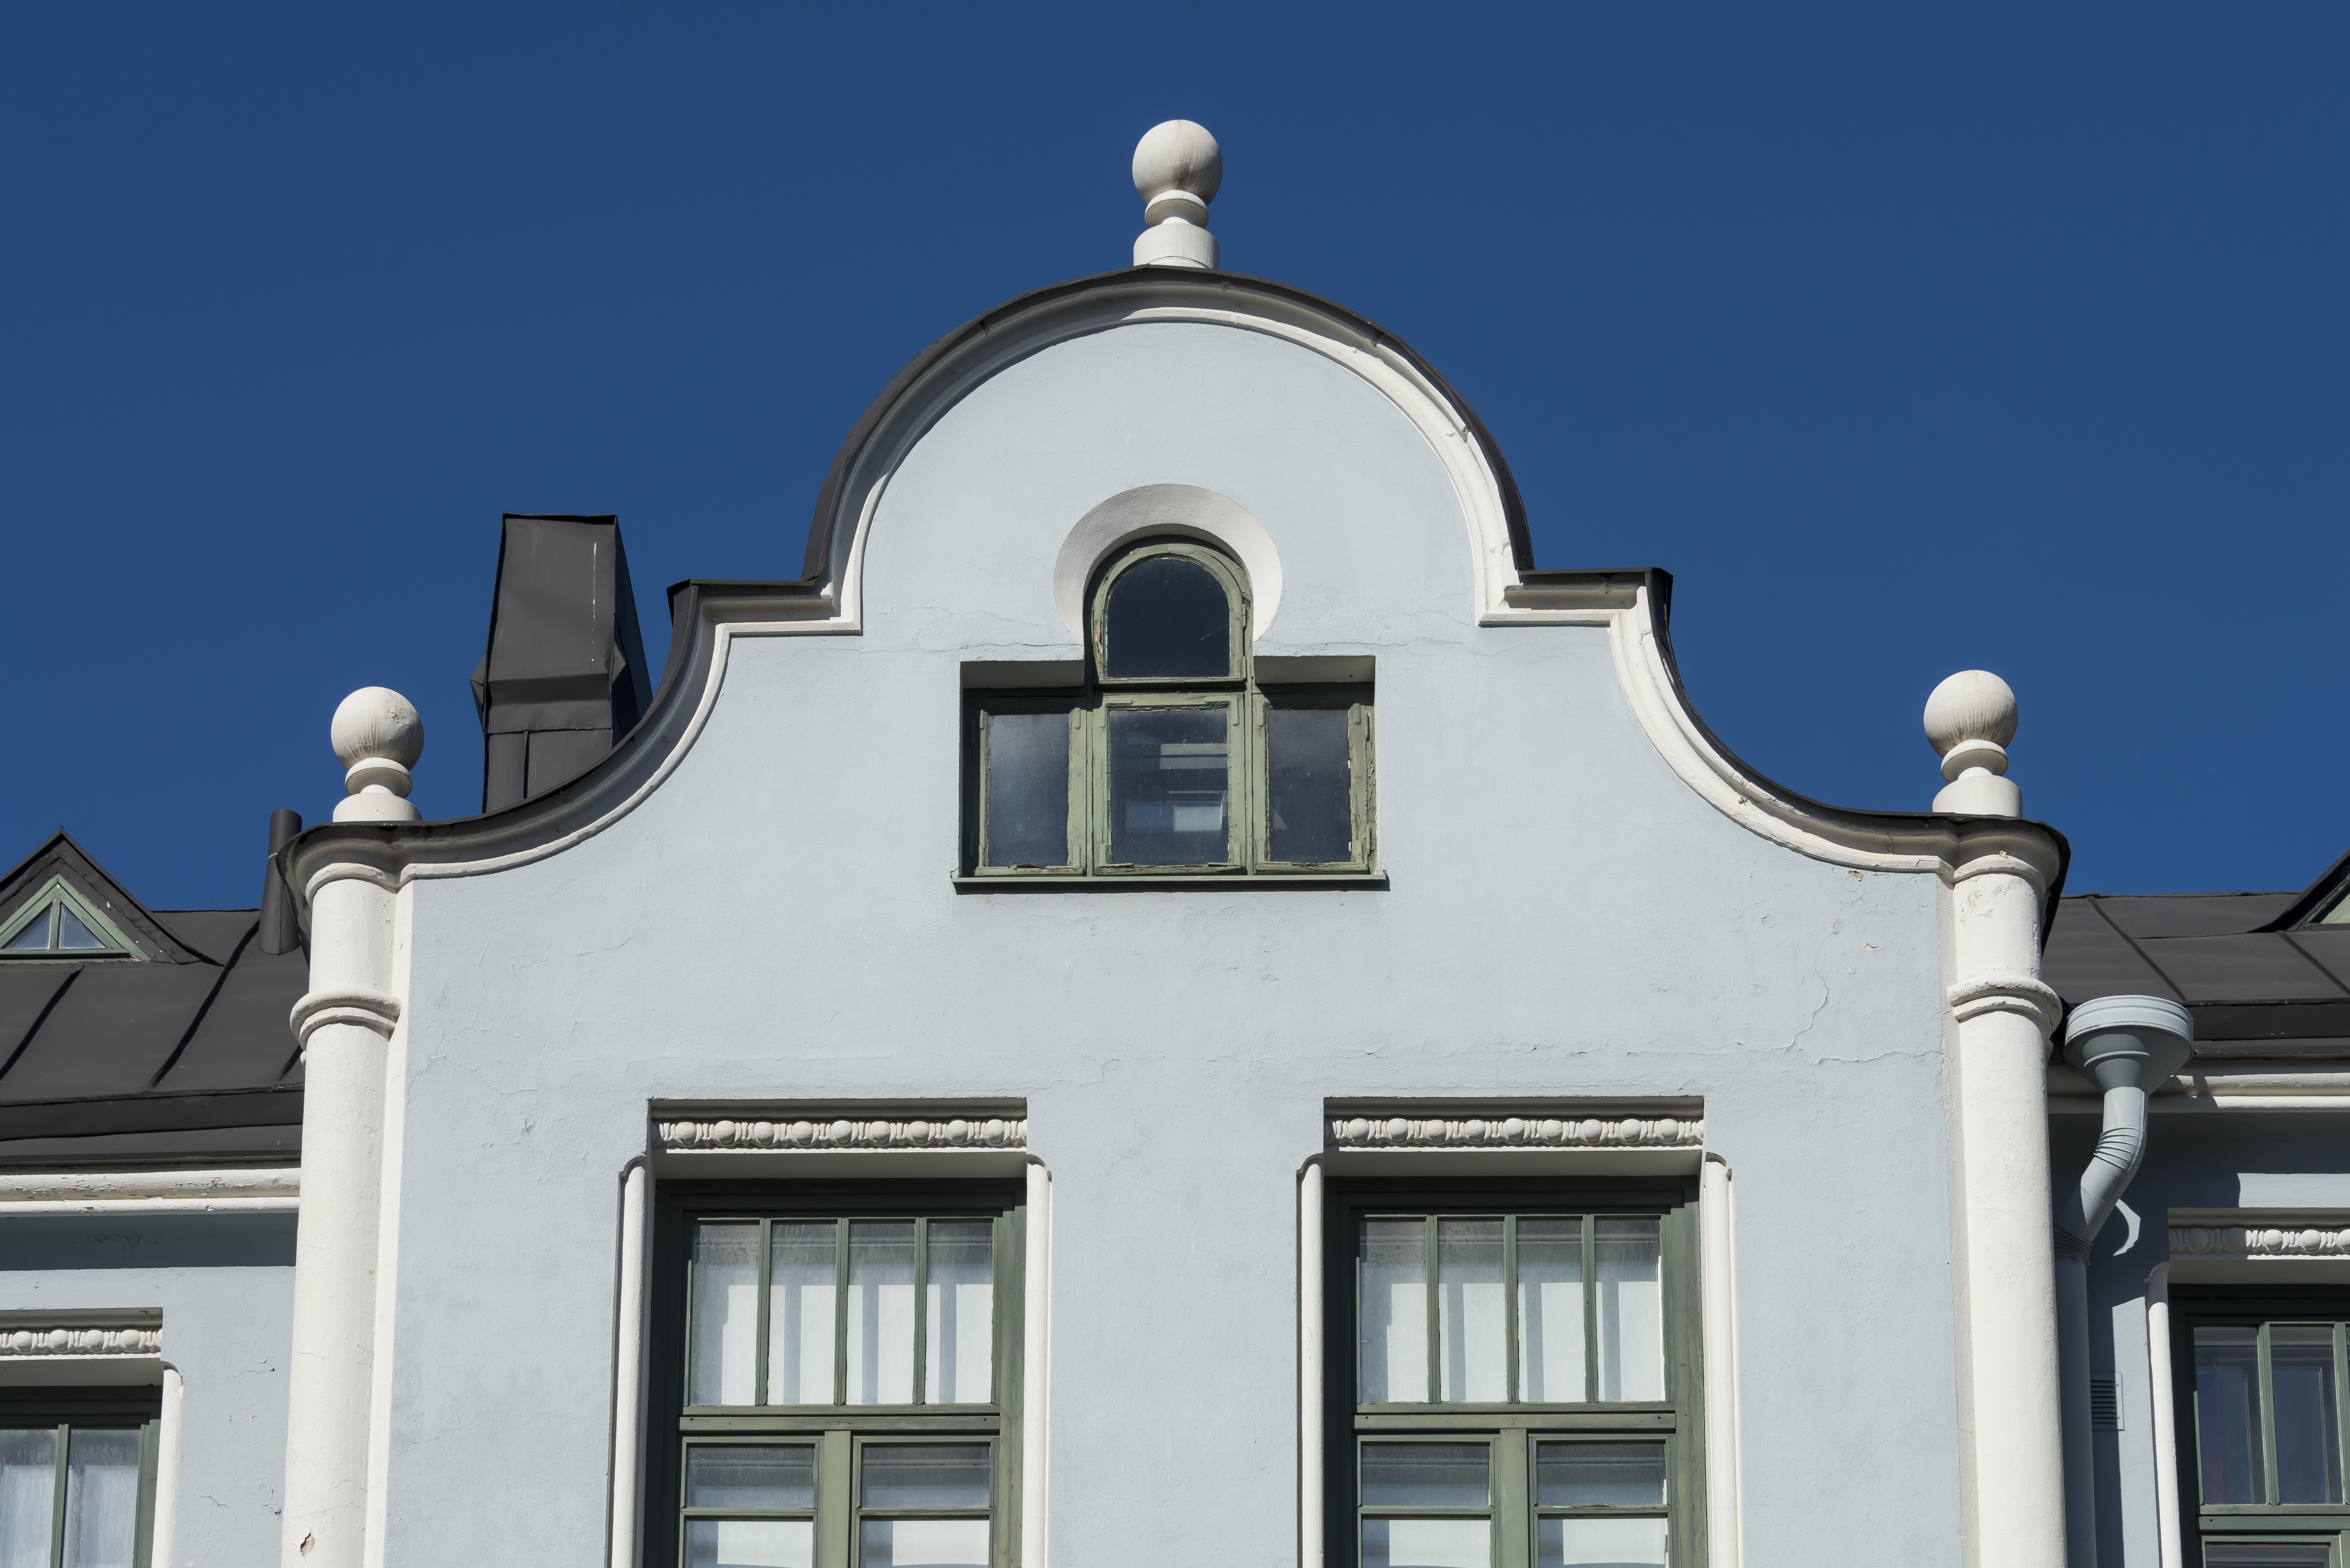 Huvilakatu 8. F. Oskar Heleniuksen suunnittelema rakennus vuodelta 1910. Yksityiskohta - julkisivun koristeita.